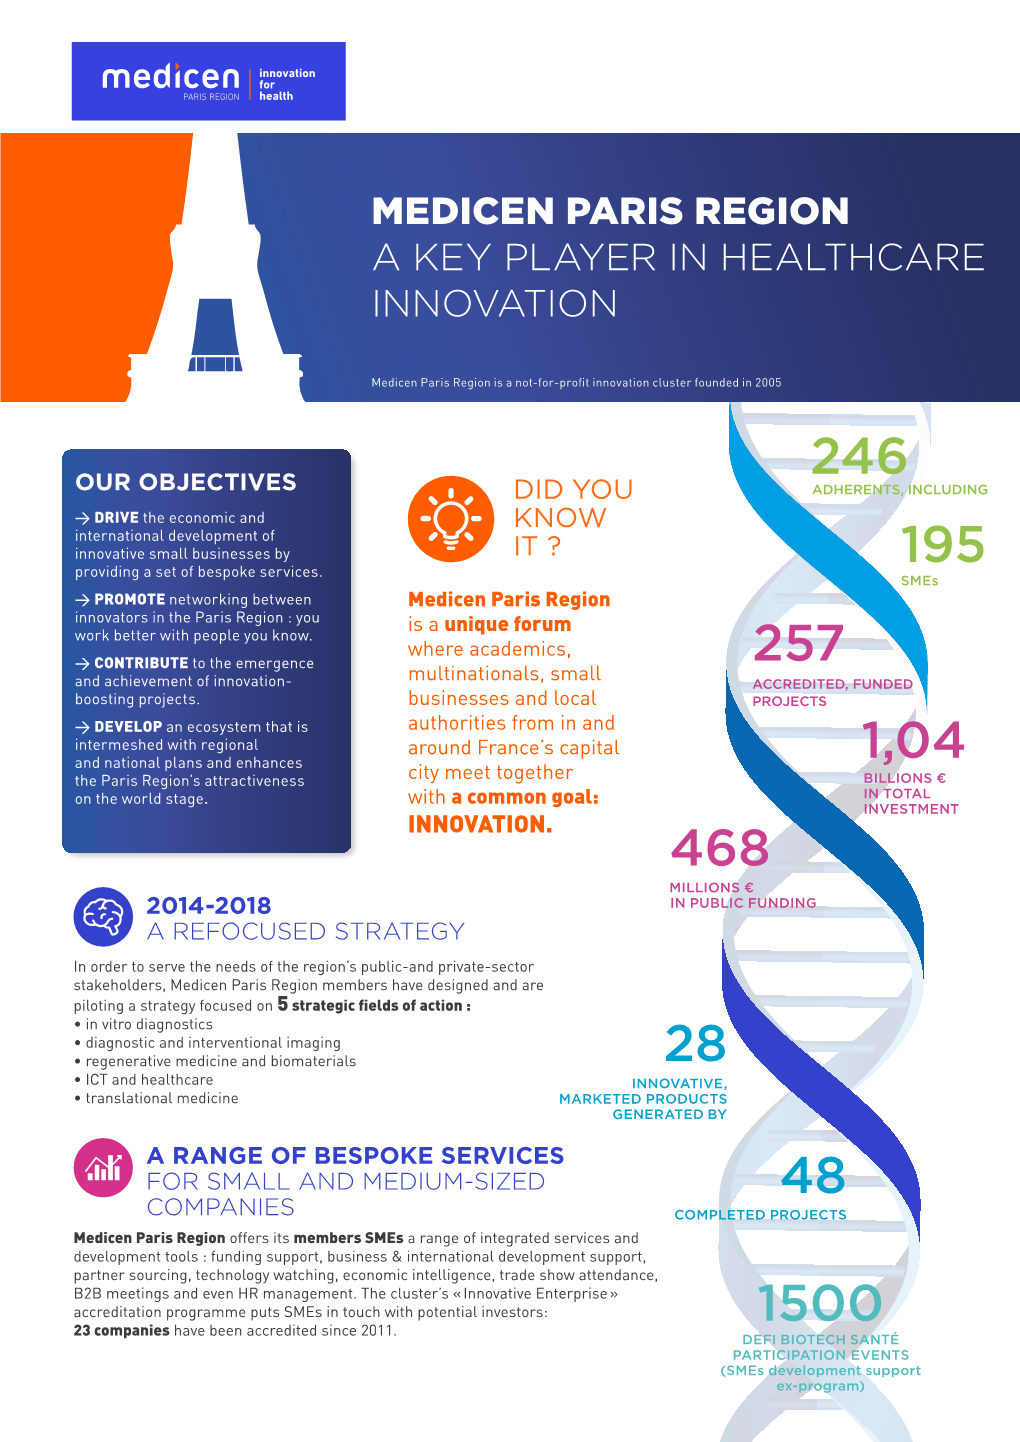 Medicen Paris Region a Key Player in Healthcare Innovation